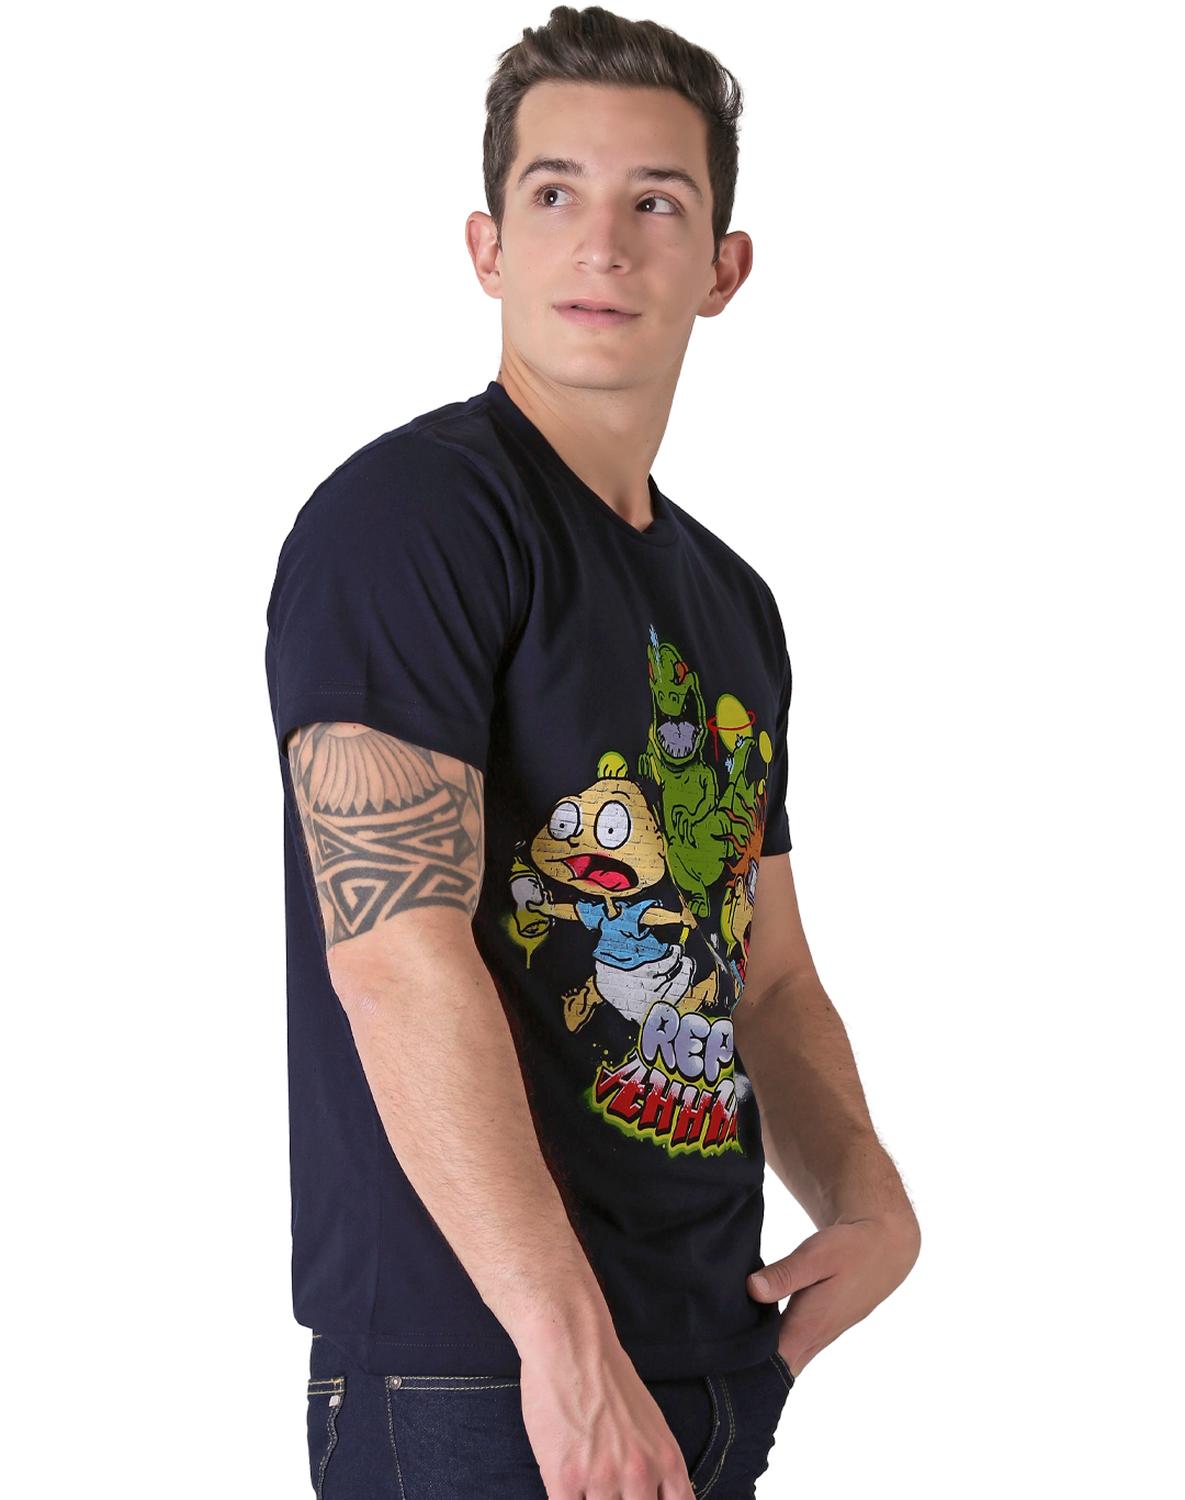 Playera Moda Camiseta Hombre Azul Nickelodeon 58204827